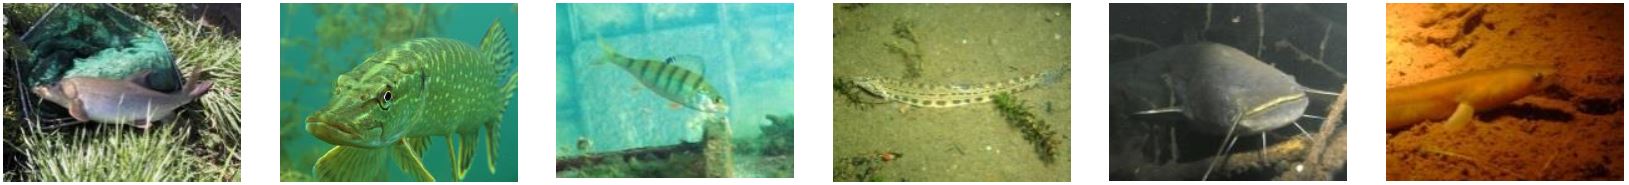 Auf den 6 Fotos sind die unterschiedlichen Fische im Gewässer abgebildet.